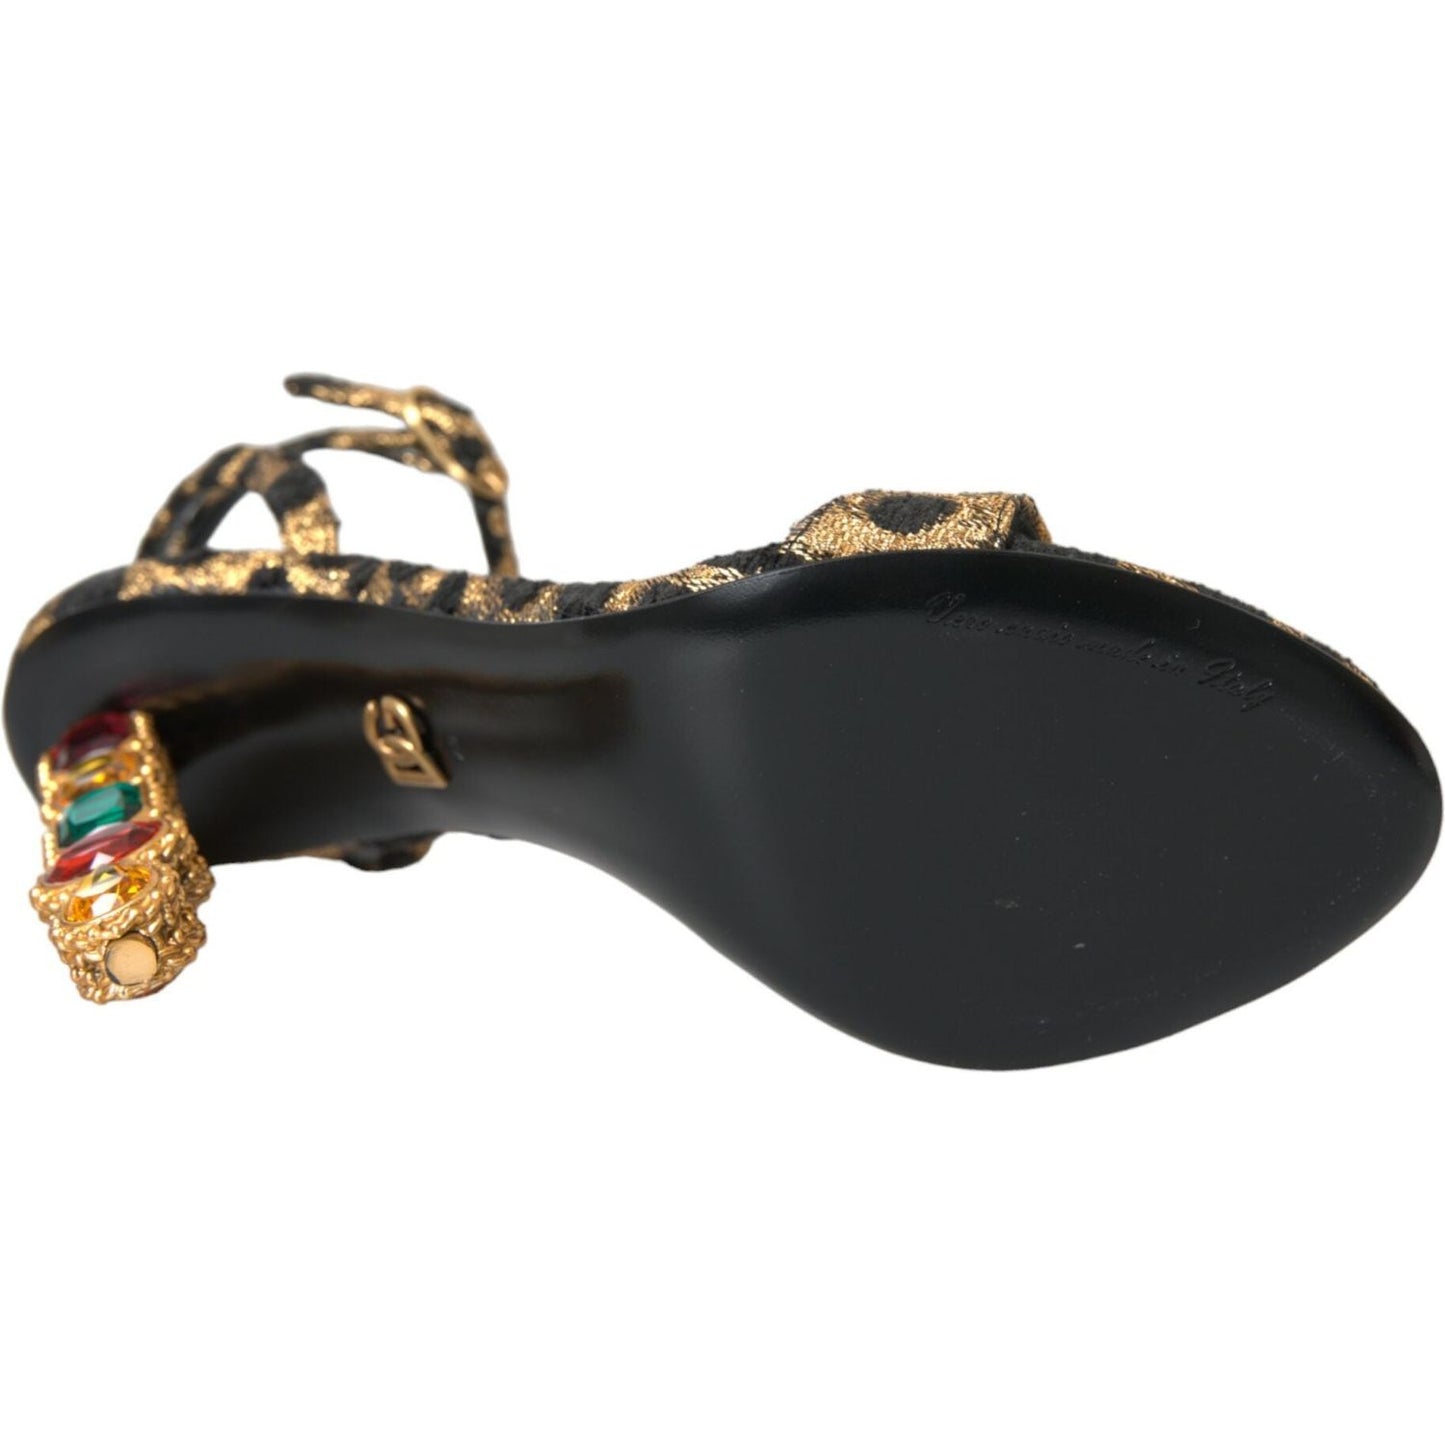 Dolce & GabbanaGold Leopard Crystals Heels Sandals ShoesMcRichard Designer Brands£979.00